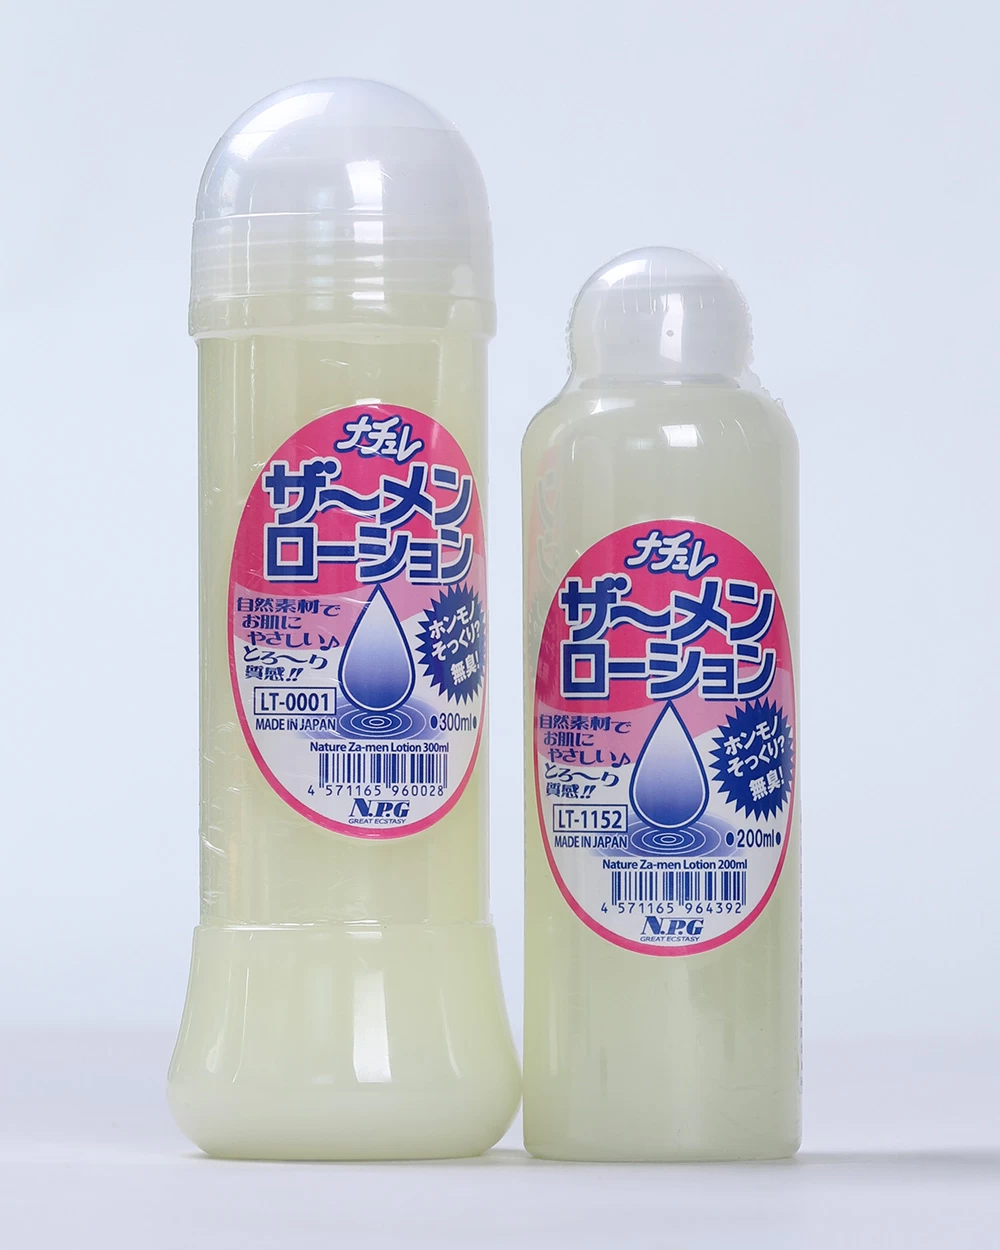  Đại lý Gel bôi trơn massage dạng tinh dịch cao cấp NPG Nature Za-men Lotion Made in Japan loại tốt